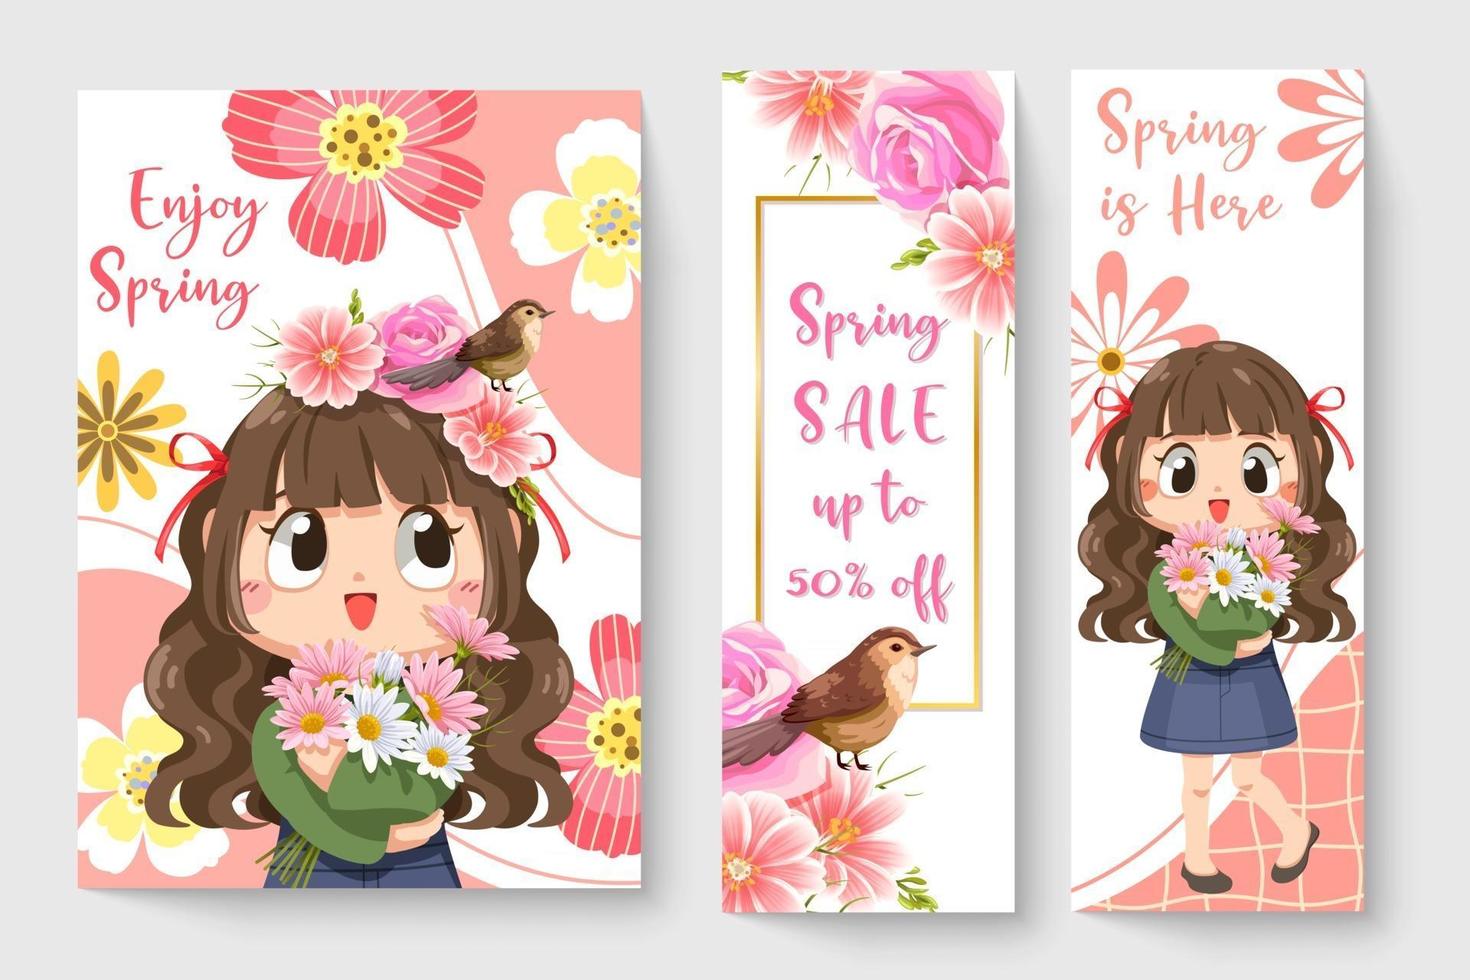 lief meisje met vogeltje in lente thema illustratie voor kinderen mode kunstwerken, kinderboeken, prenten, t-shirt afbeelding. vector